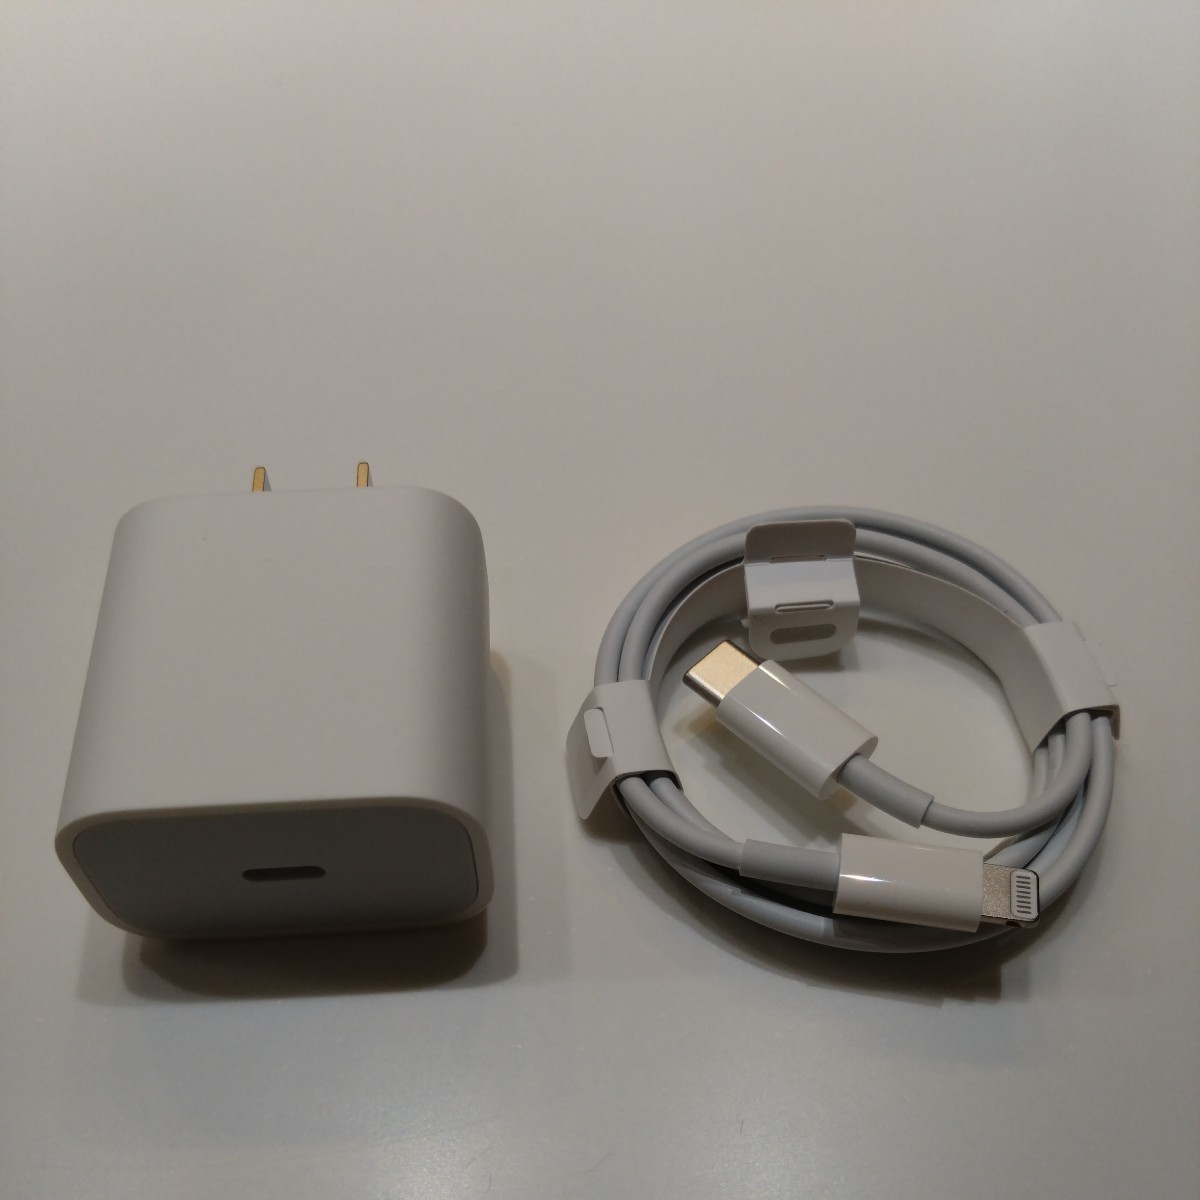 アップル Apple 純正品 USB-C 電源アダプタ A2305 20W ACアダプタ 充電器 USB-C - Lightning ケーブル ライトニングケーブル_画像1